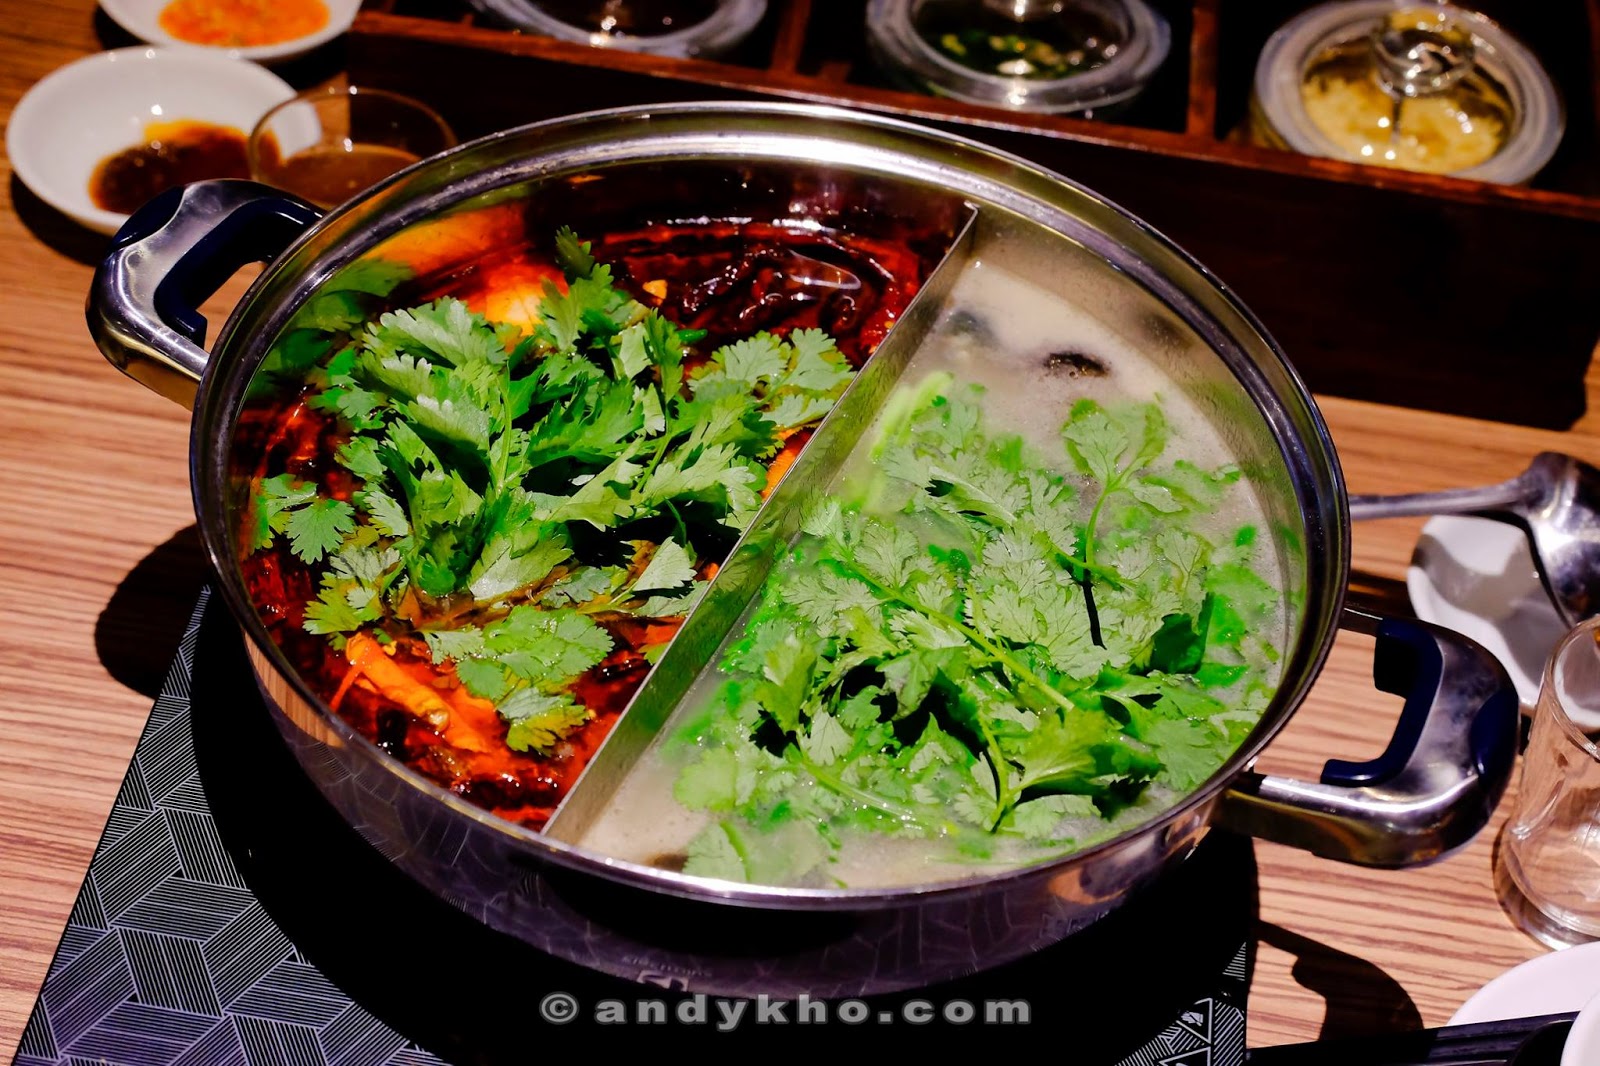 香港热锅 Hong Kong Hot Pot Restaurant @ Telawi Square Bangsar ...